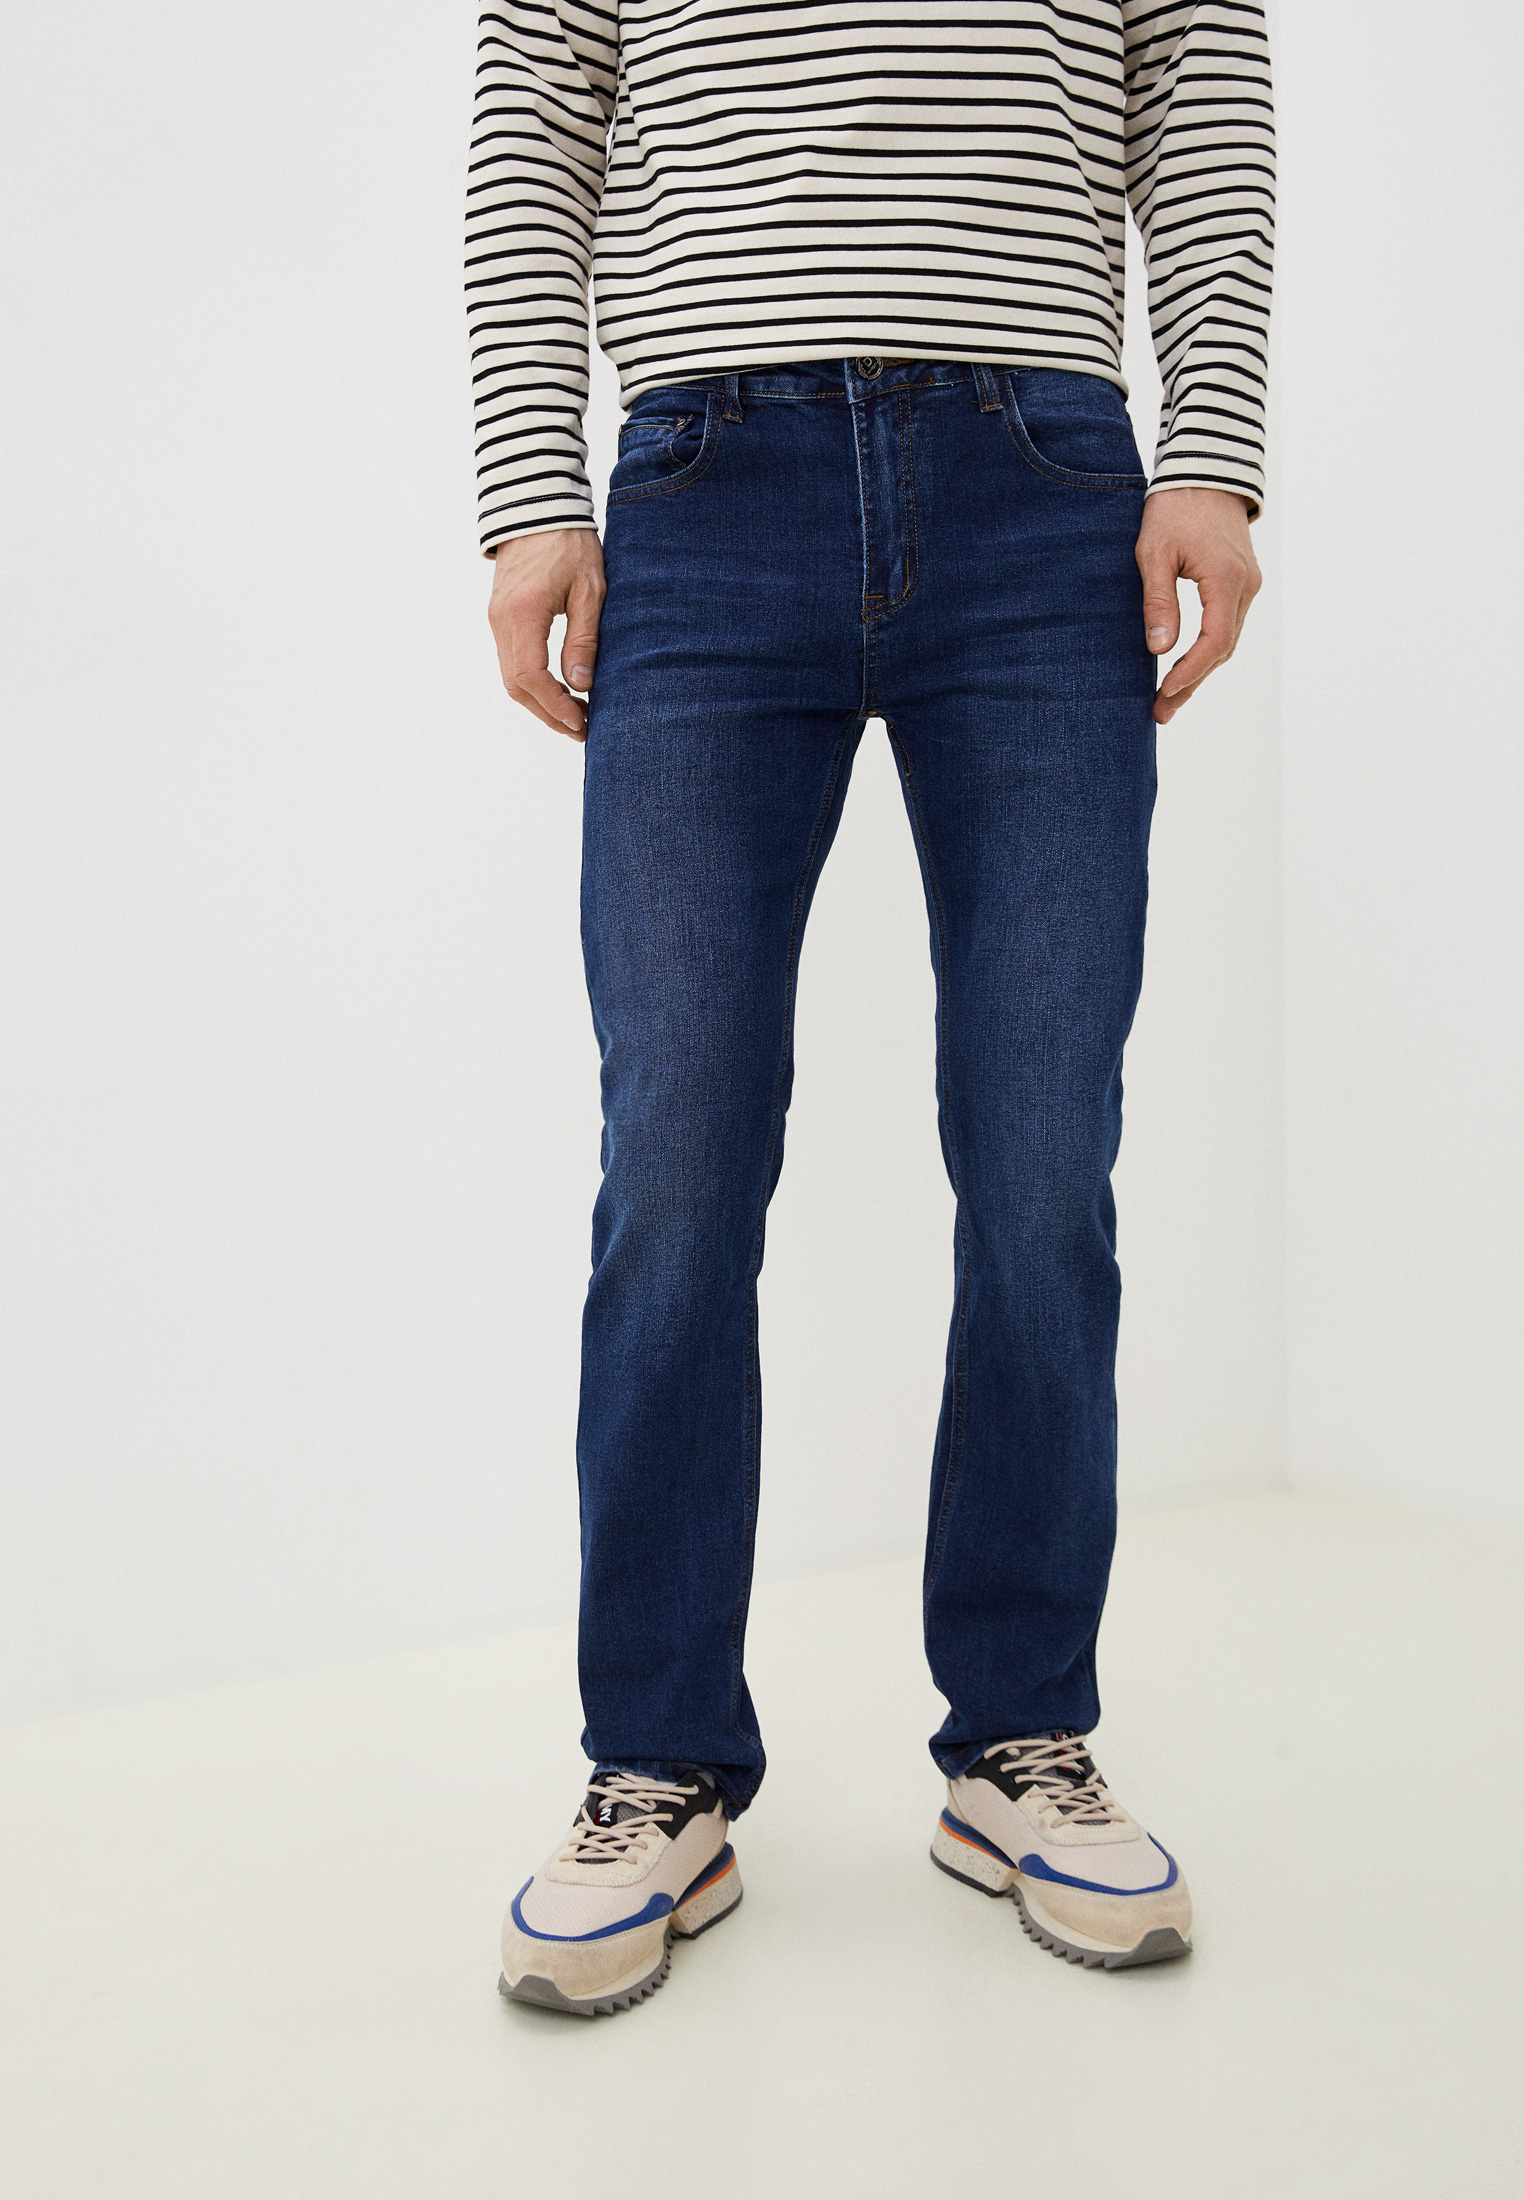 Мужские прямые джинсы Dansanti DK362